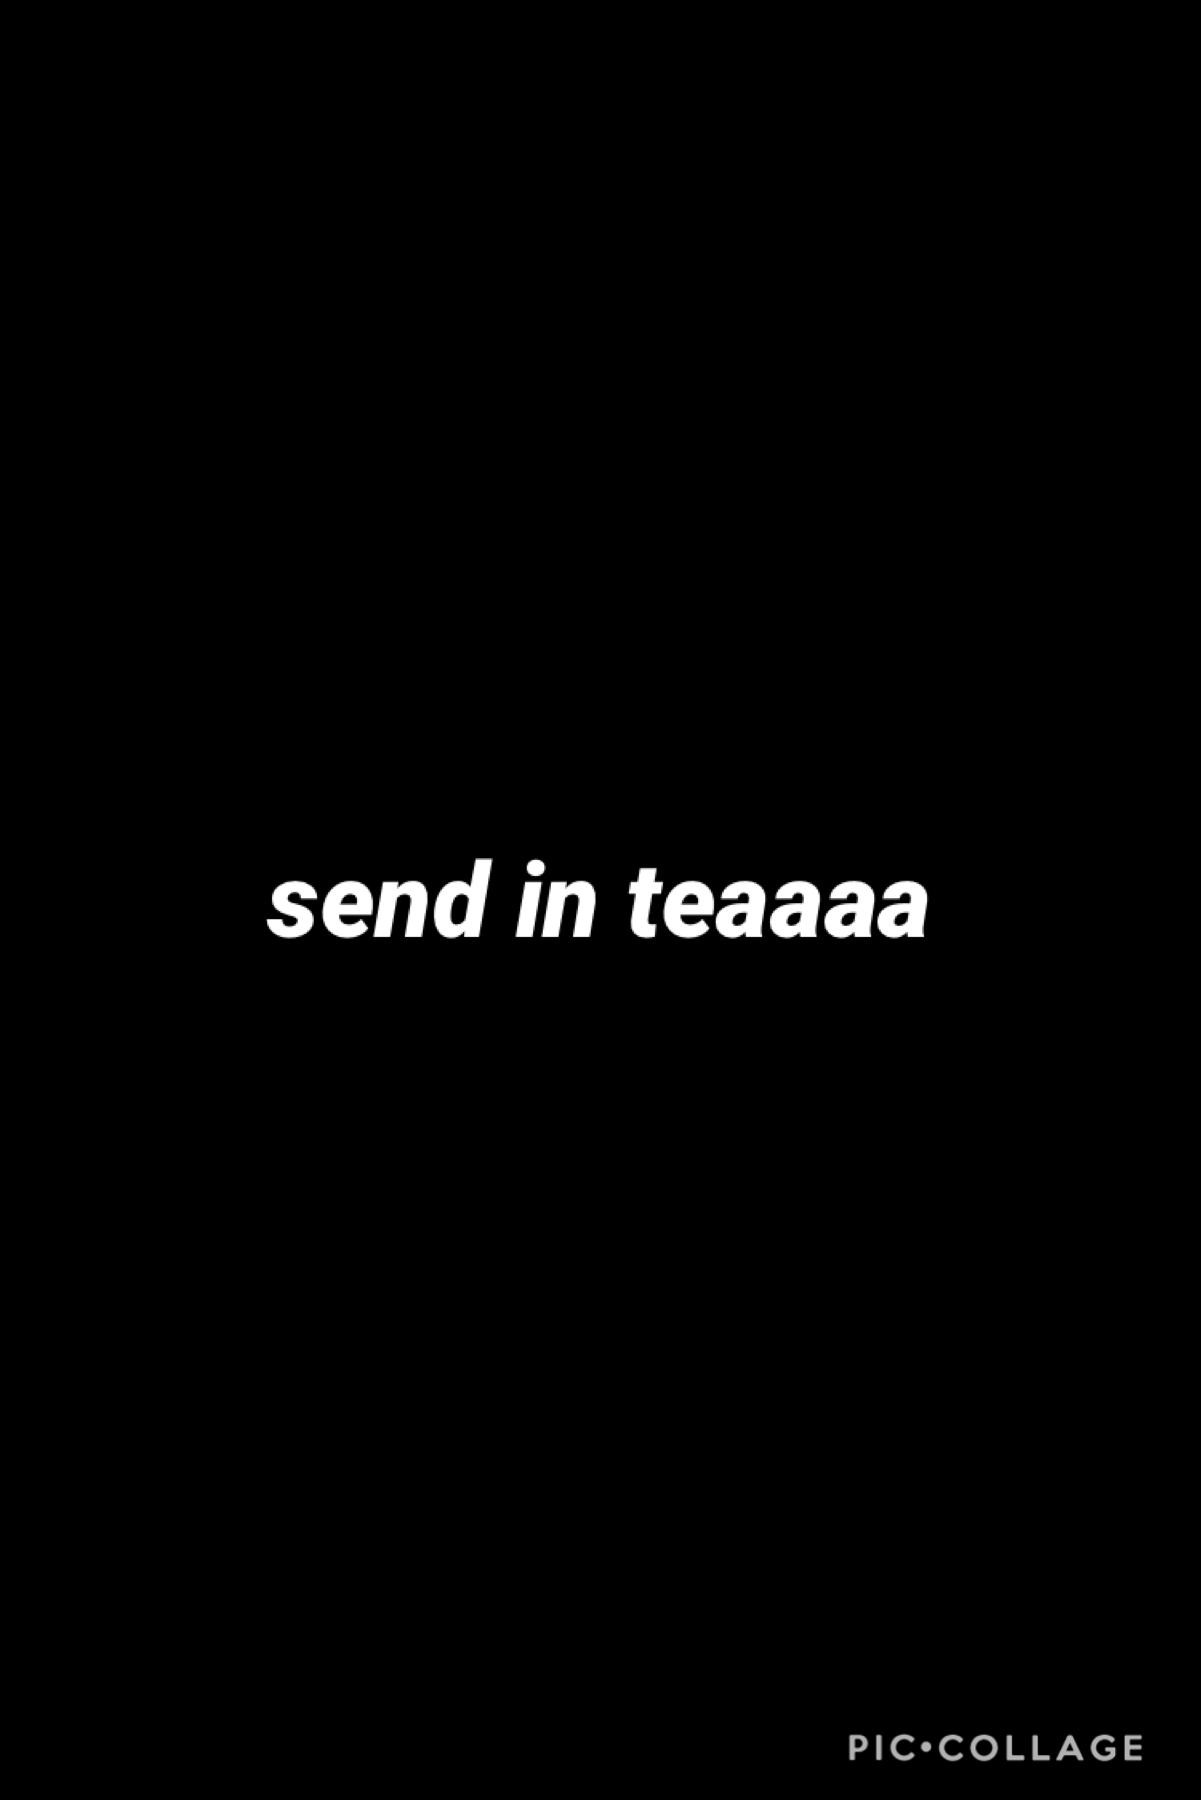 send in teaaa please! 